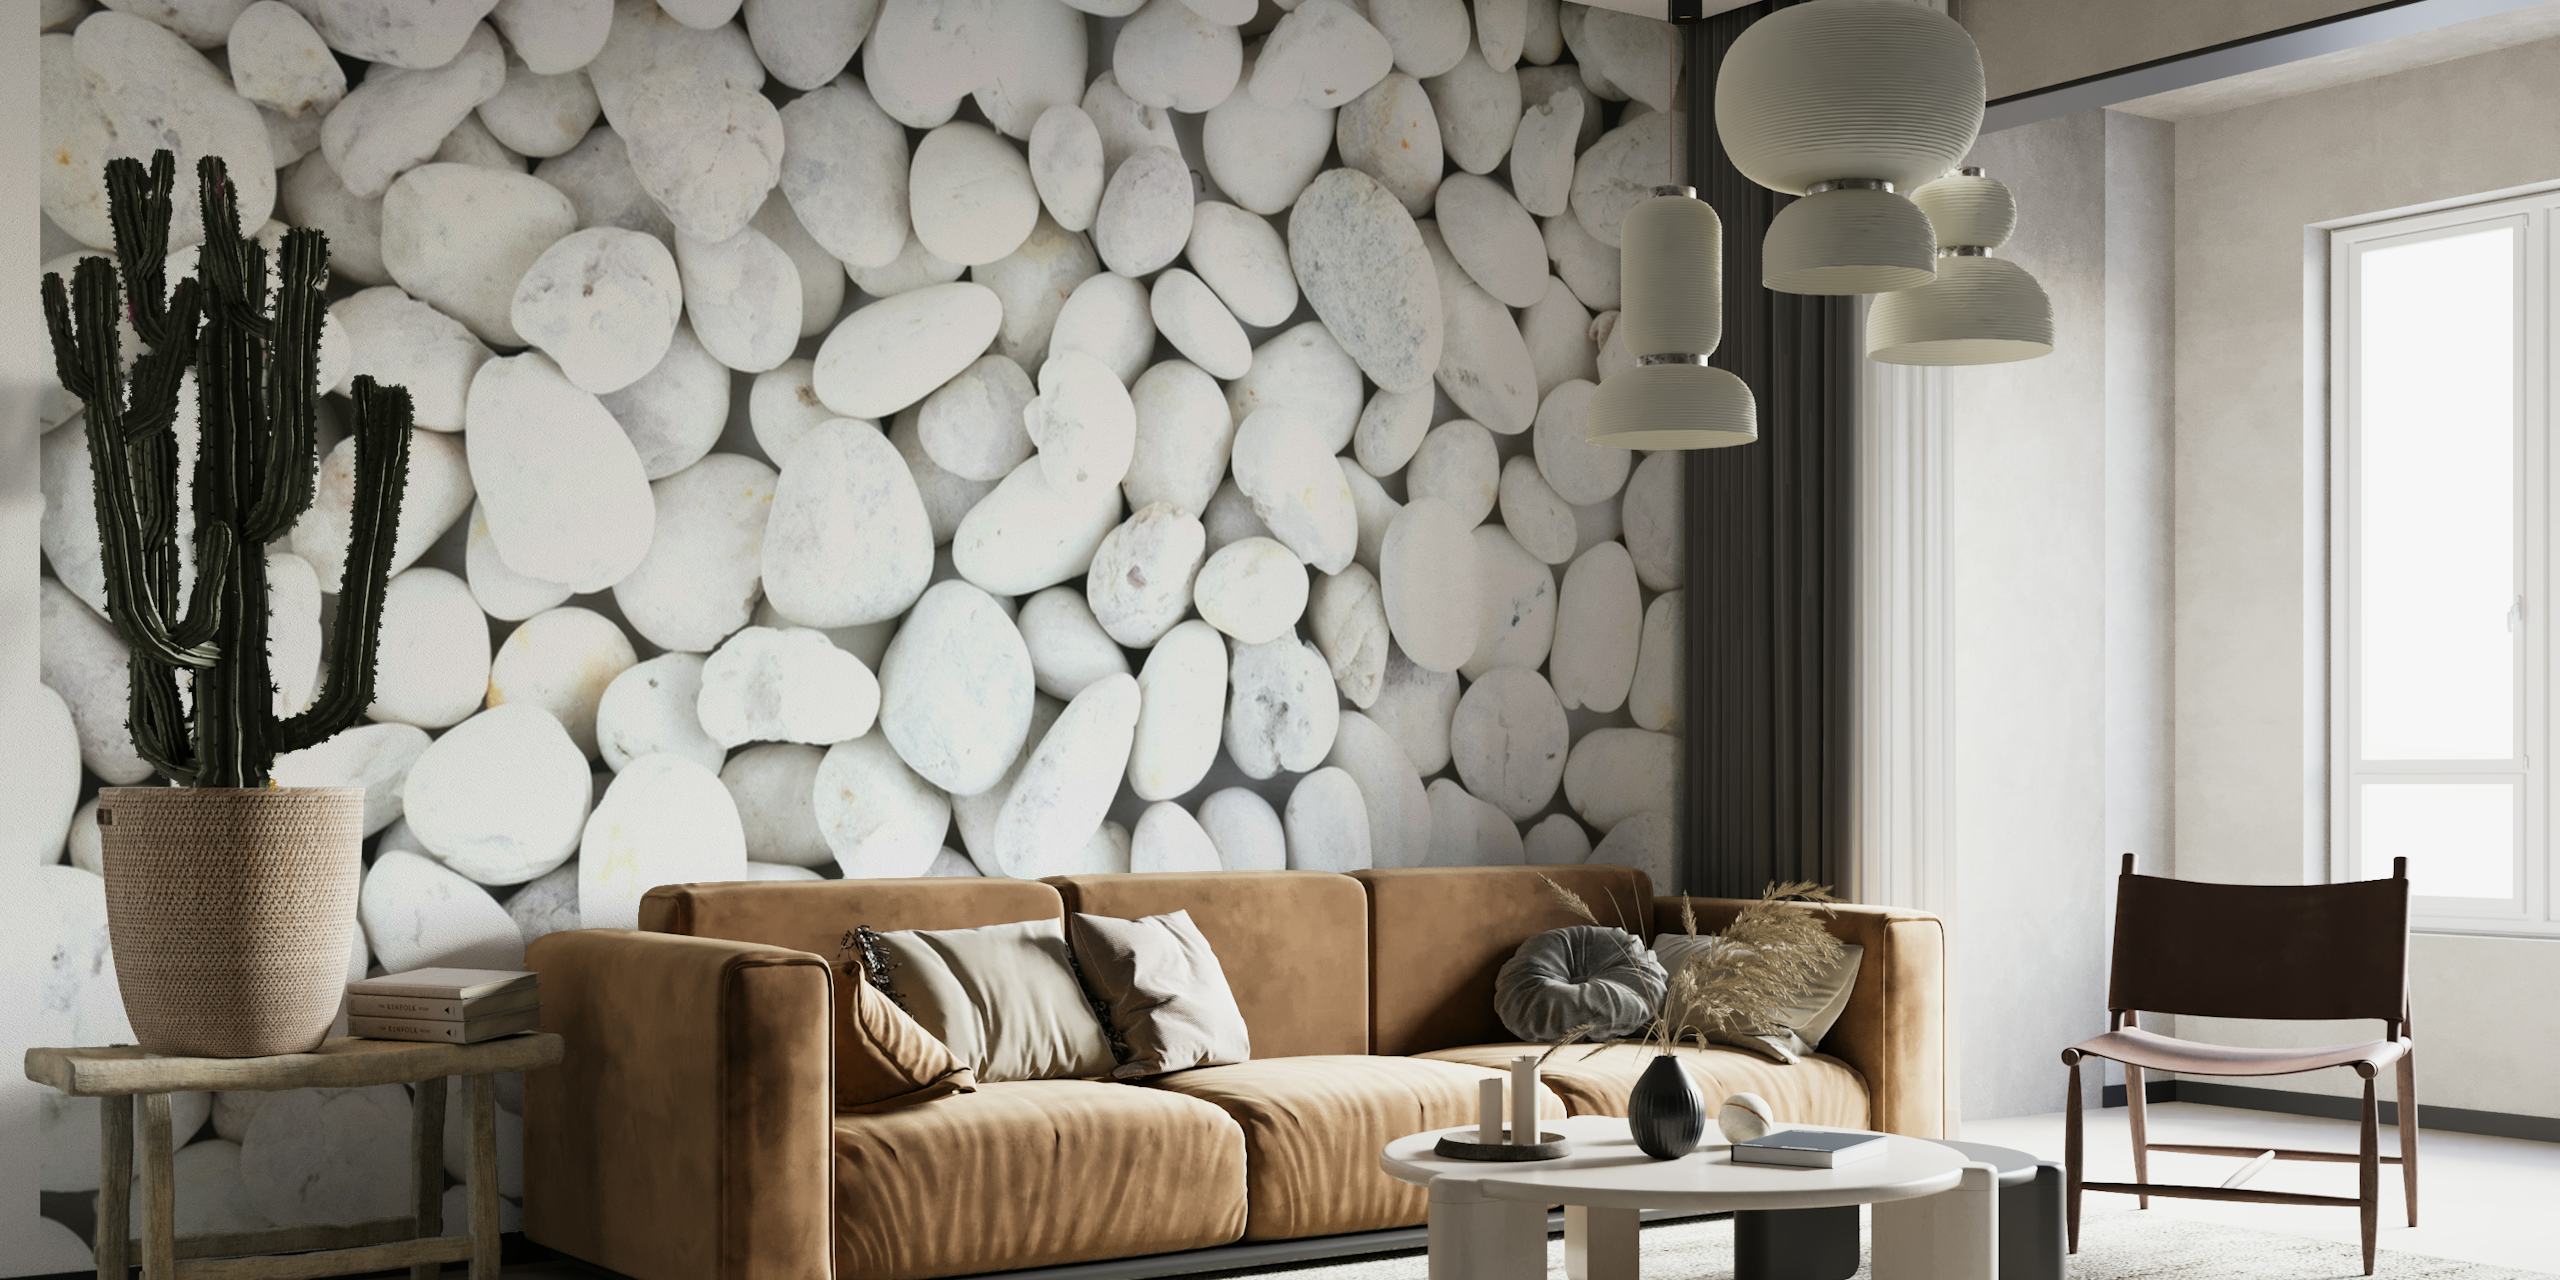 Mural de parede de pedras brancas lisas criando uma aparência tranquila e texturizada